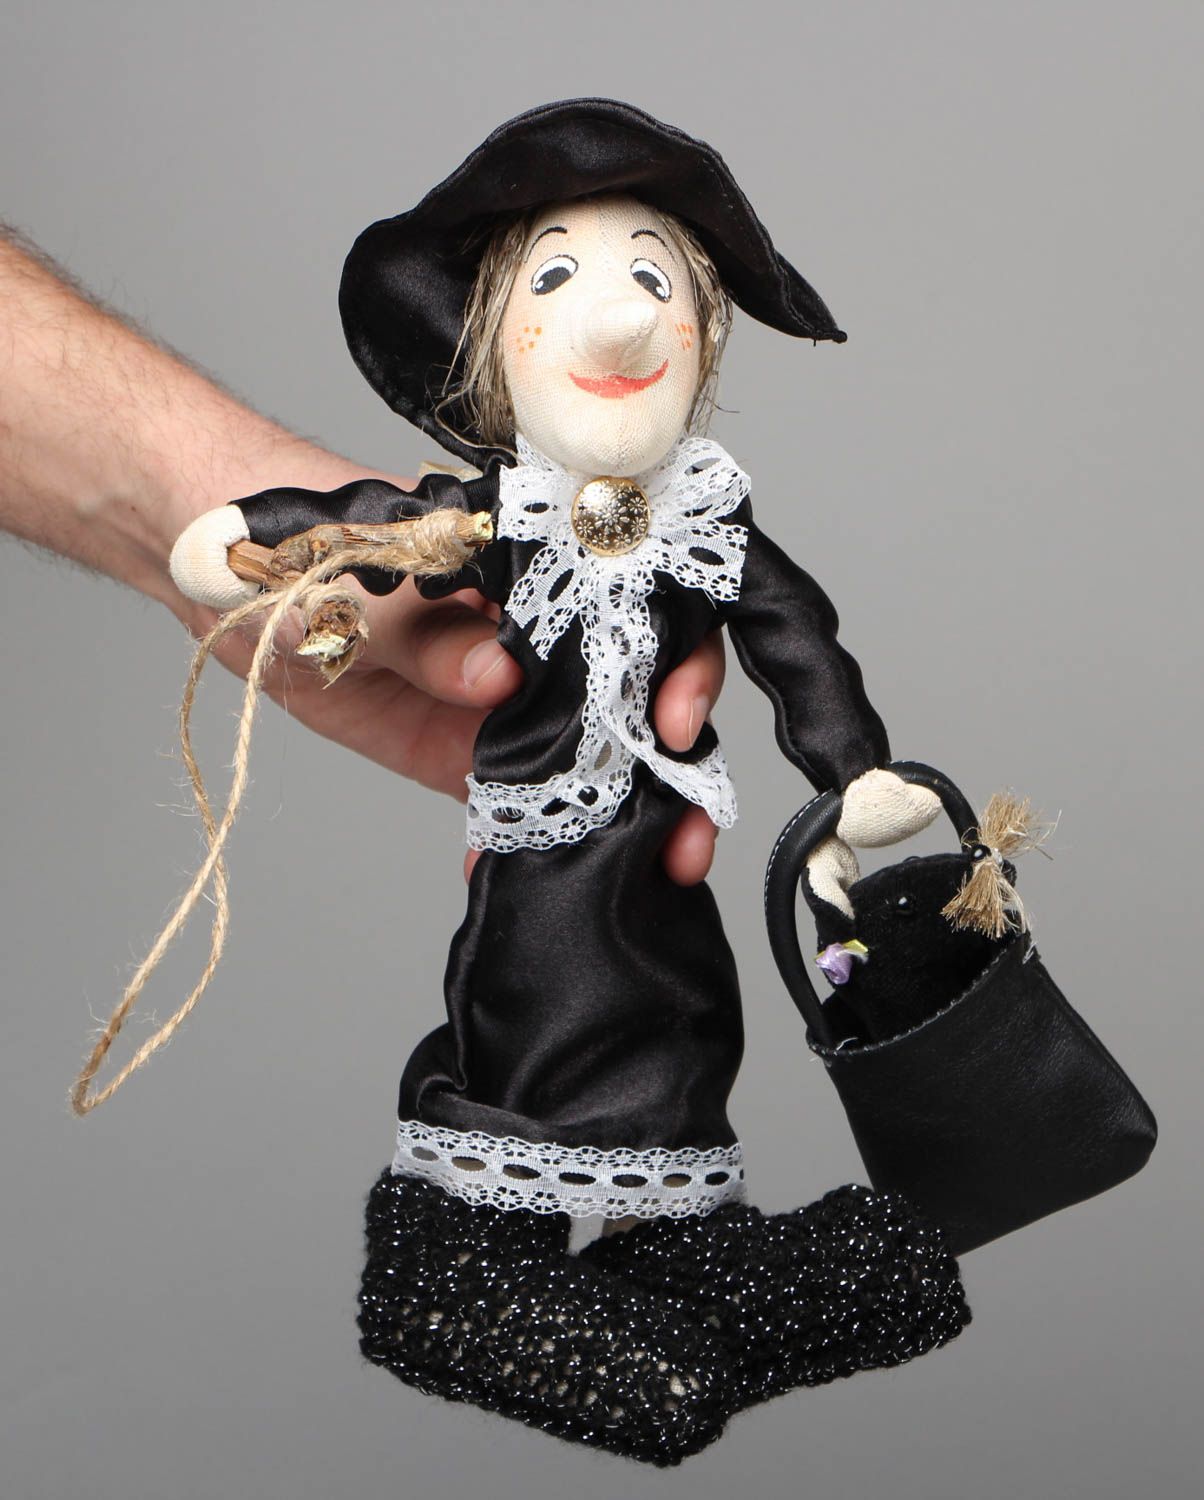 Textil Puppe handmade Dame in Schwarz foto 4